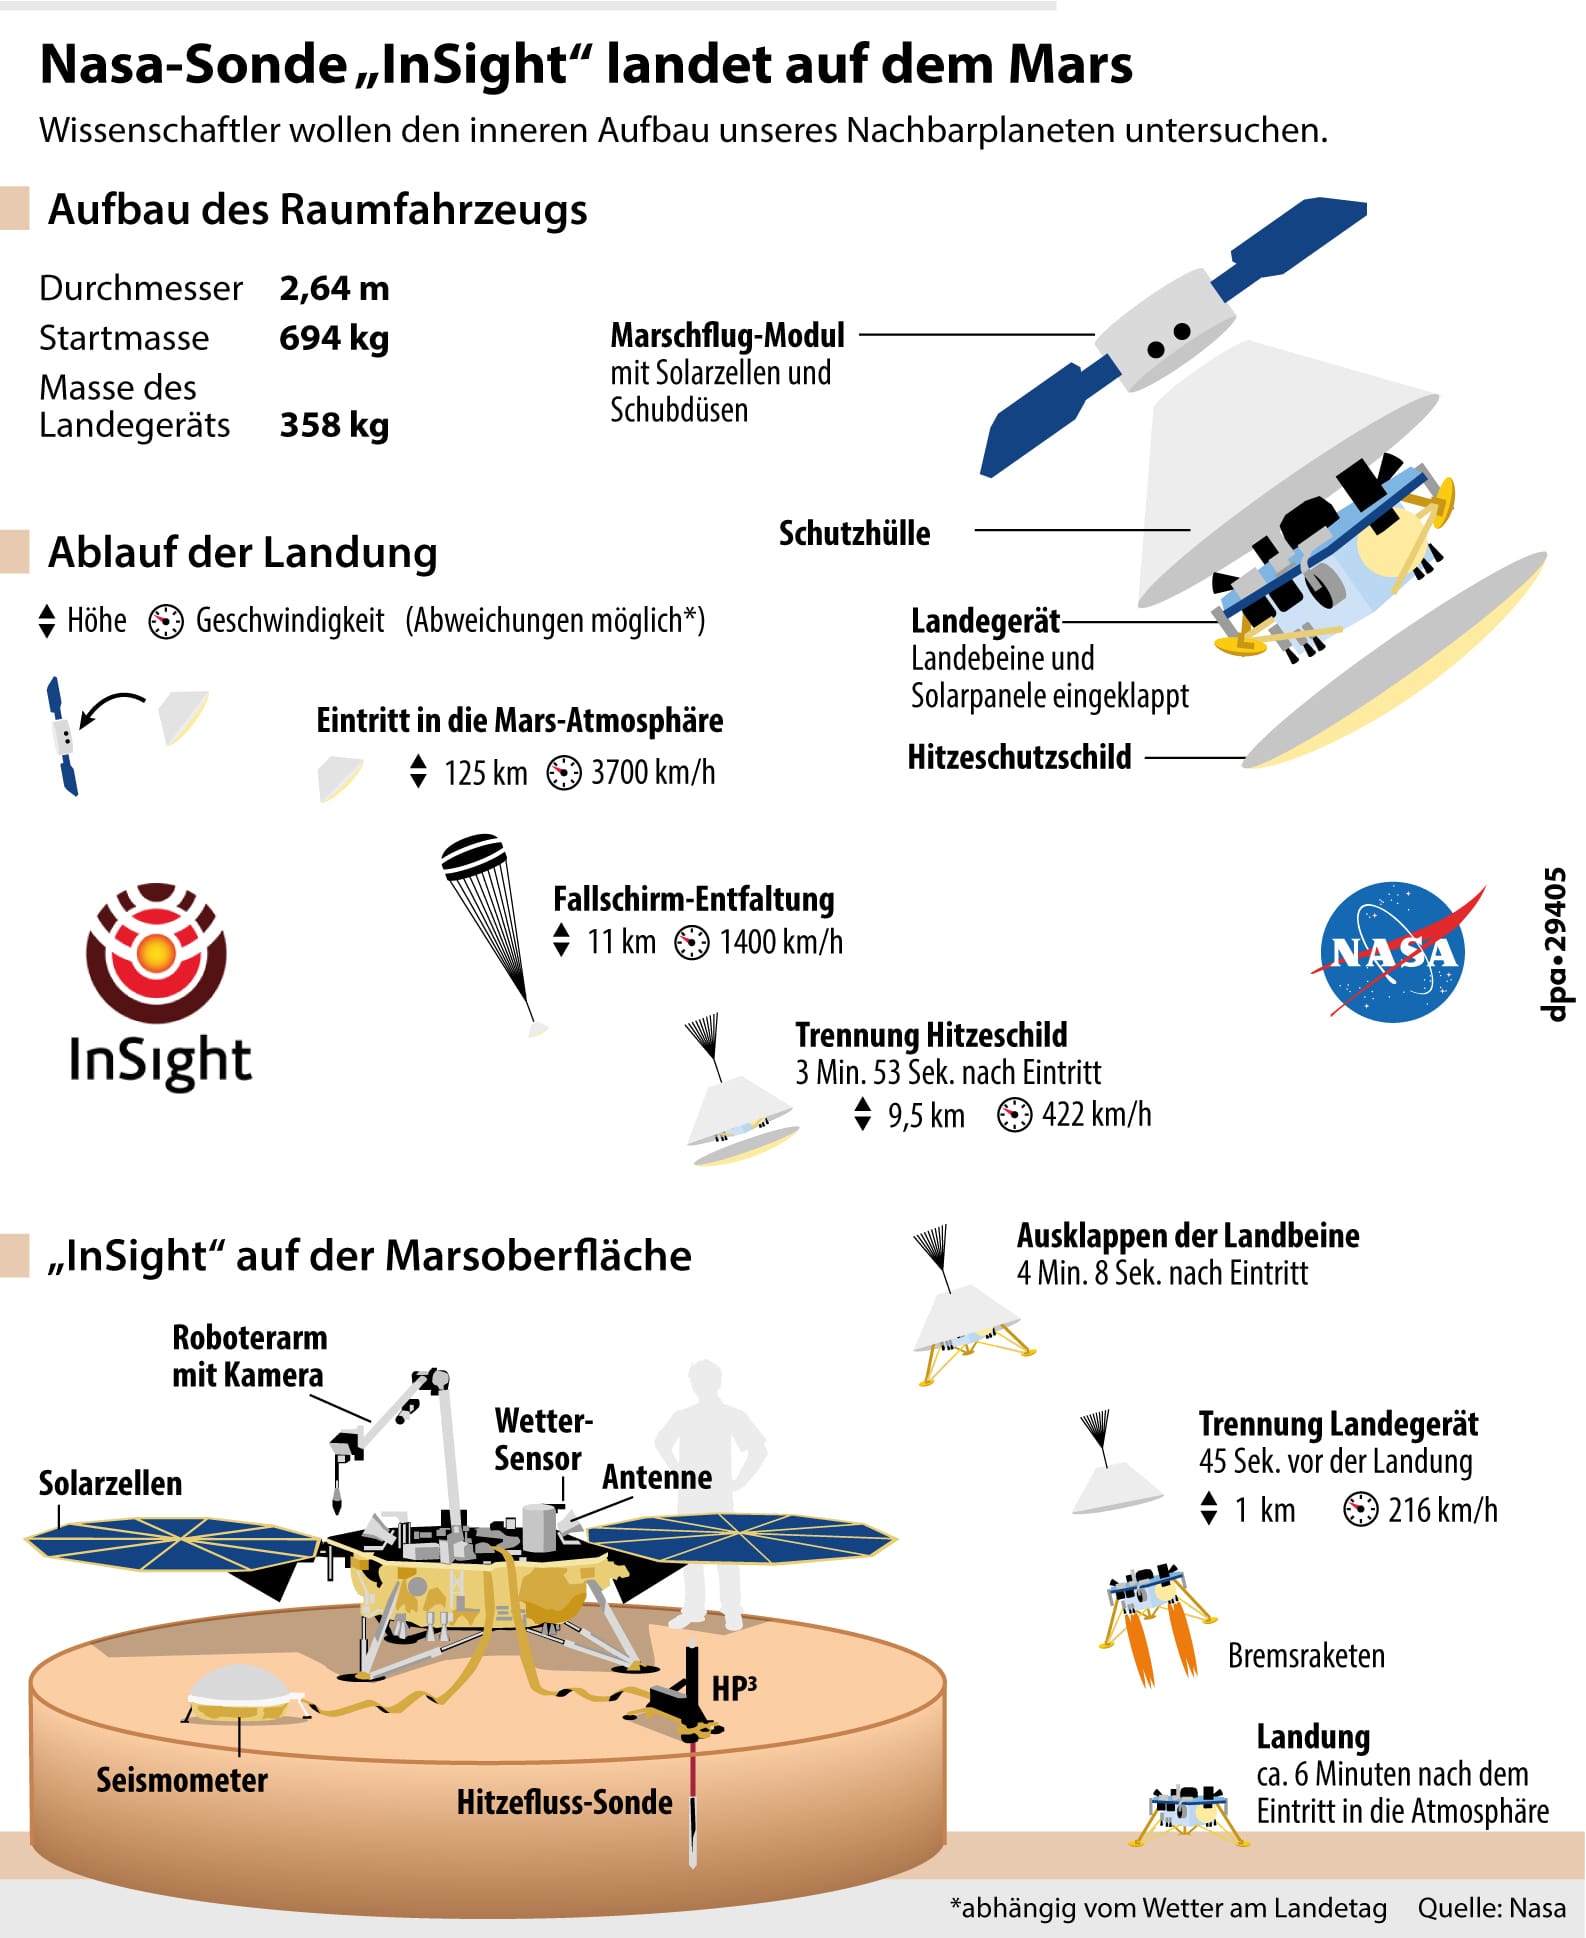 Die Nasa-Sonde "InSight" - Aufbau, Ablauf der Landung und Arbeitsweise auf dem Mars: Die Sonde soll um ca. 20:47 Uhr auf dem Mars landen.